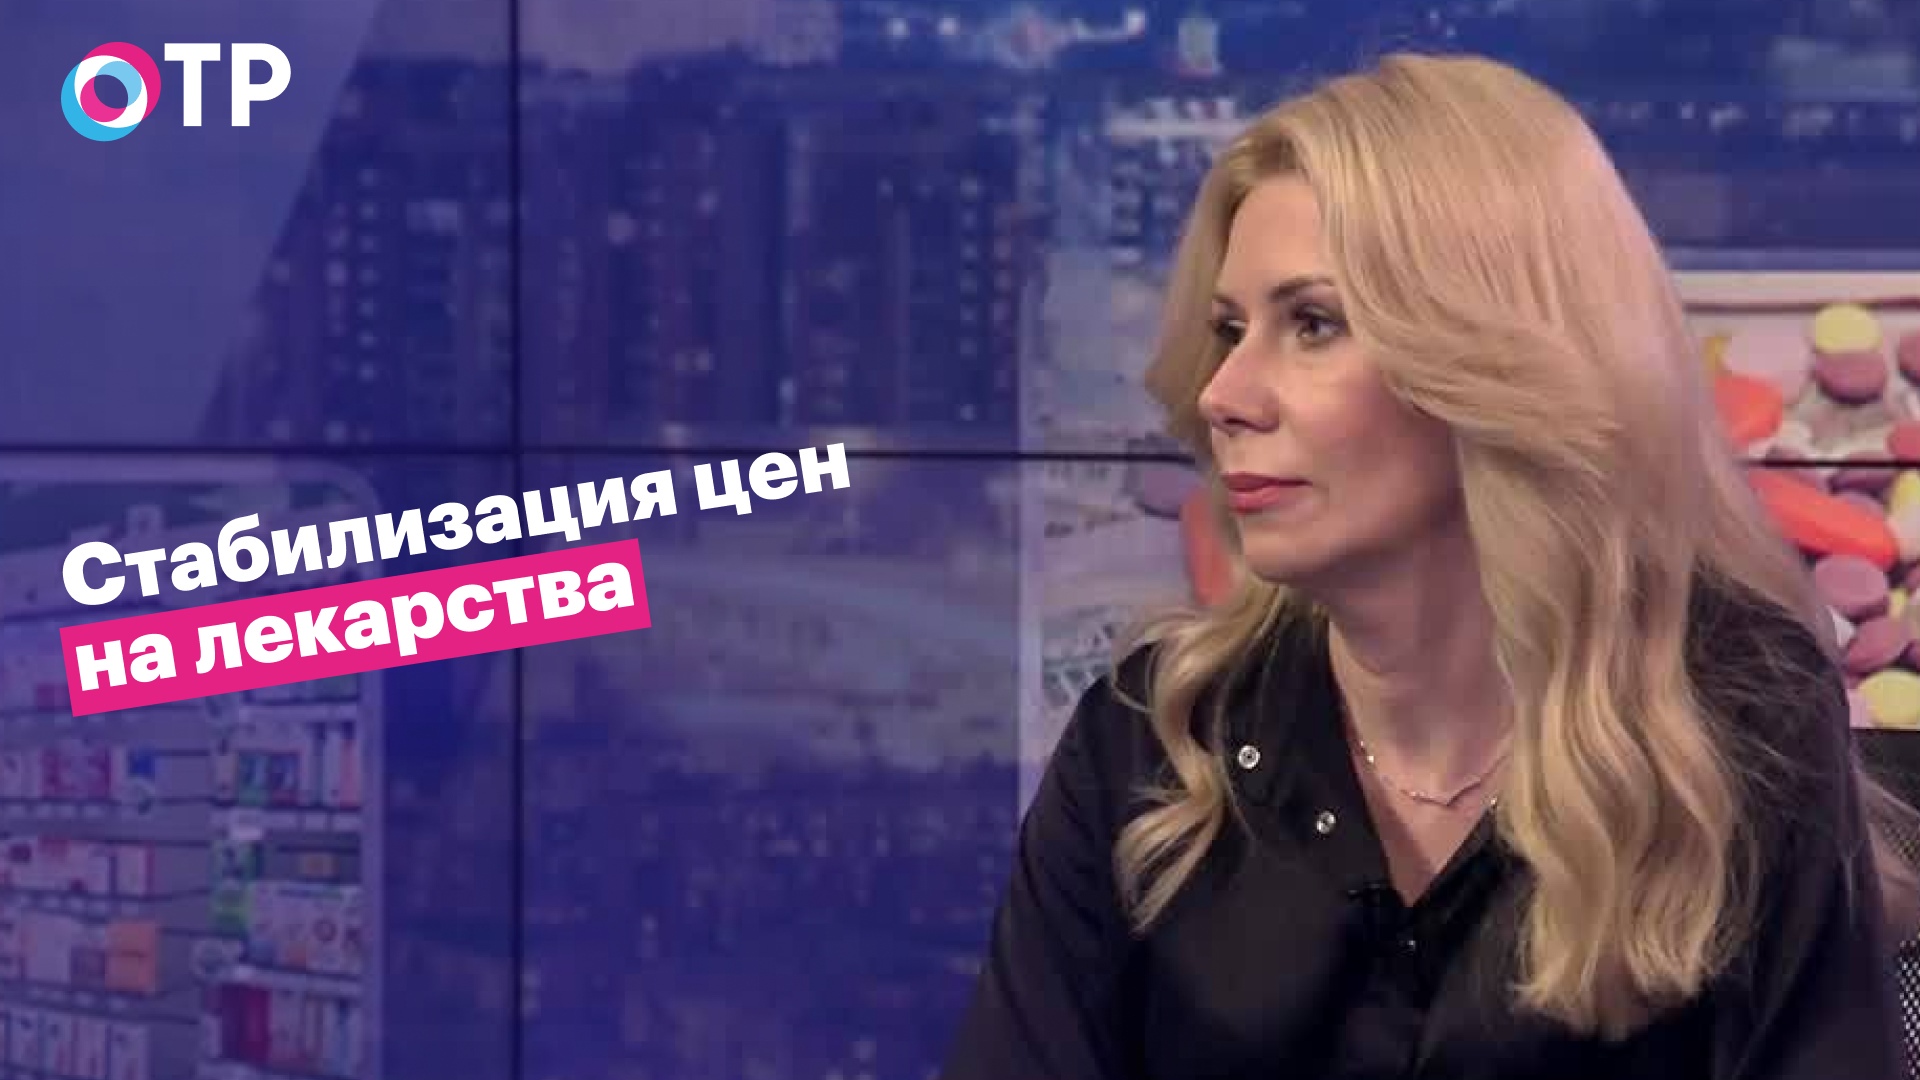 Татьяна Литвинова: Поставки лекарств налаживаются. Главное не создать новую волну ажиотажного спроса